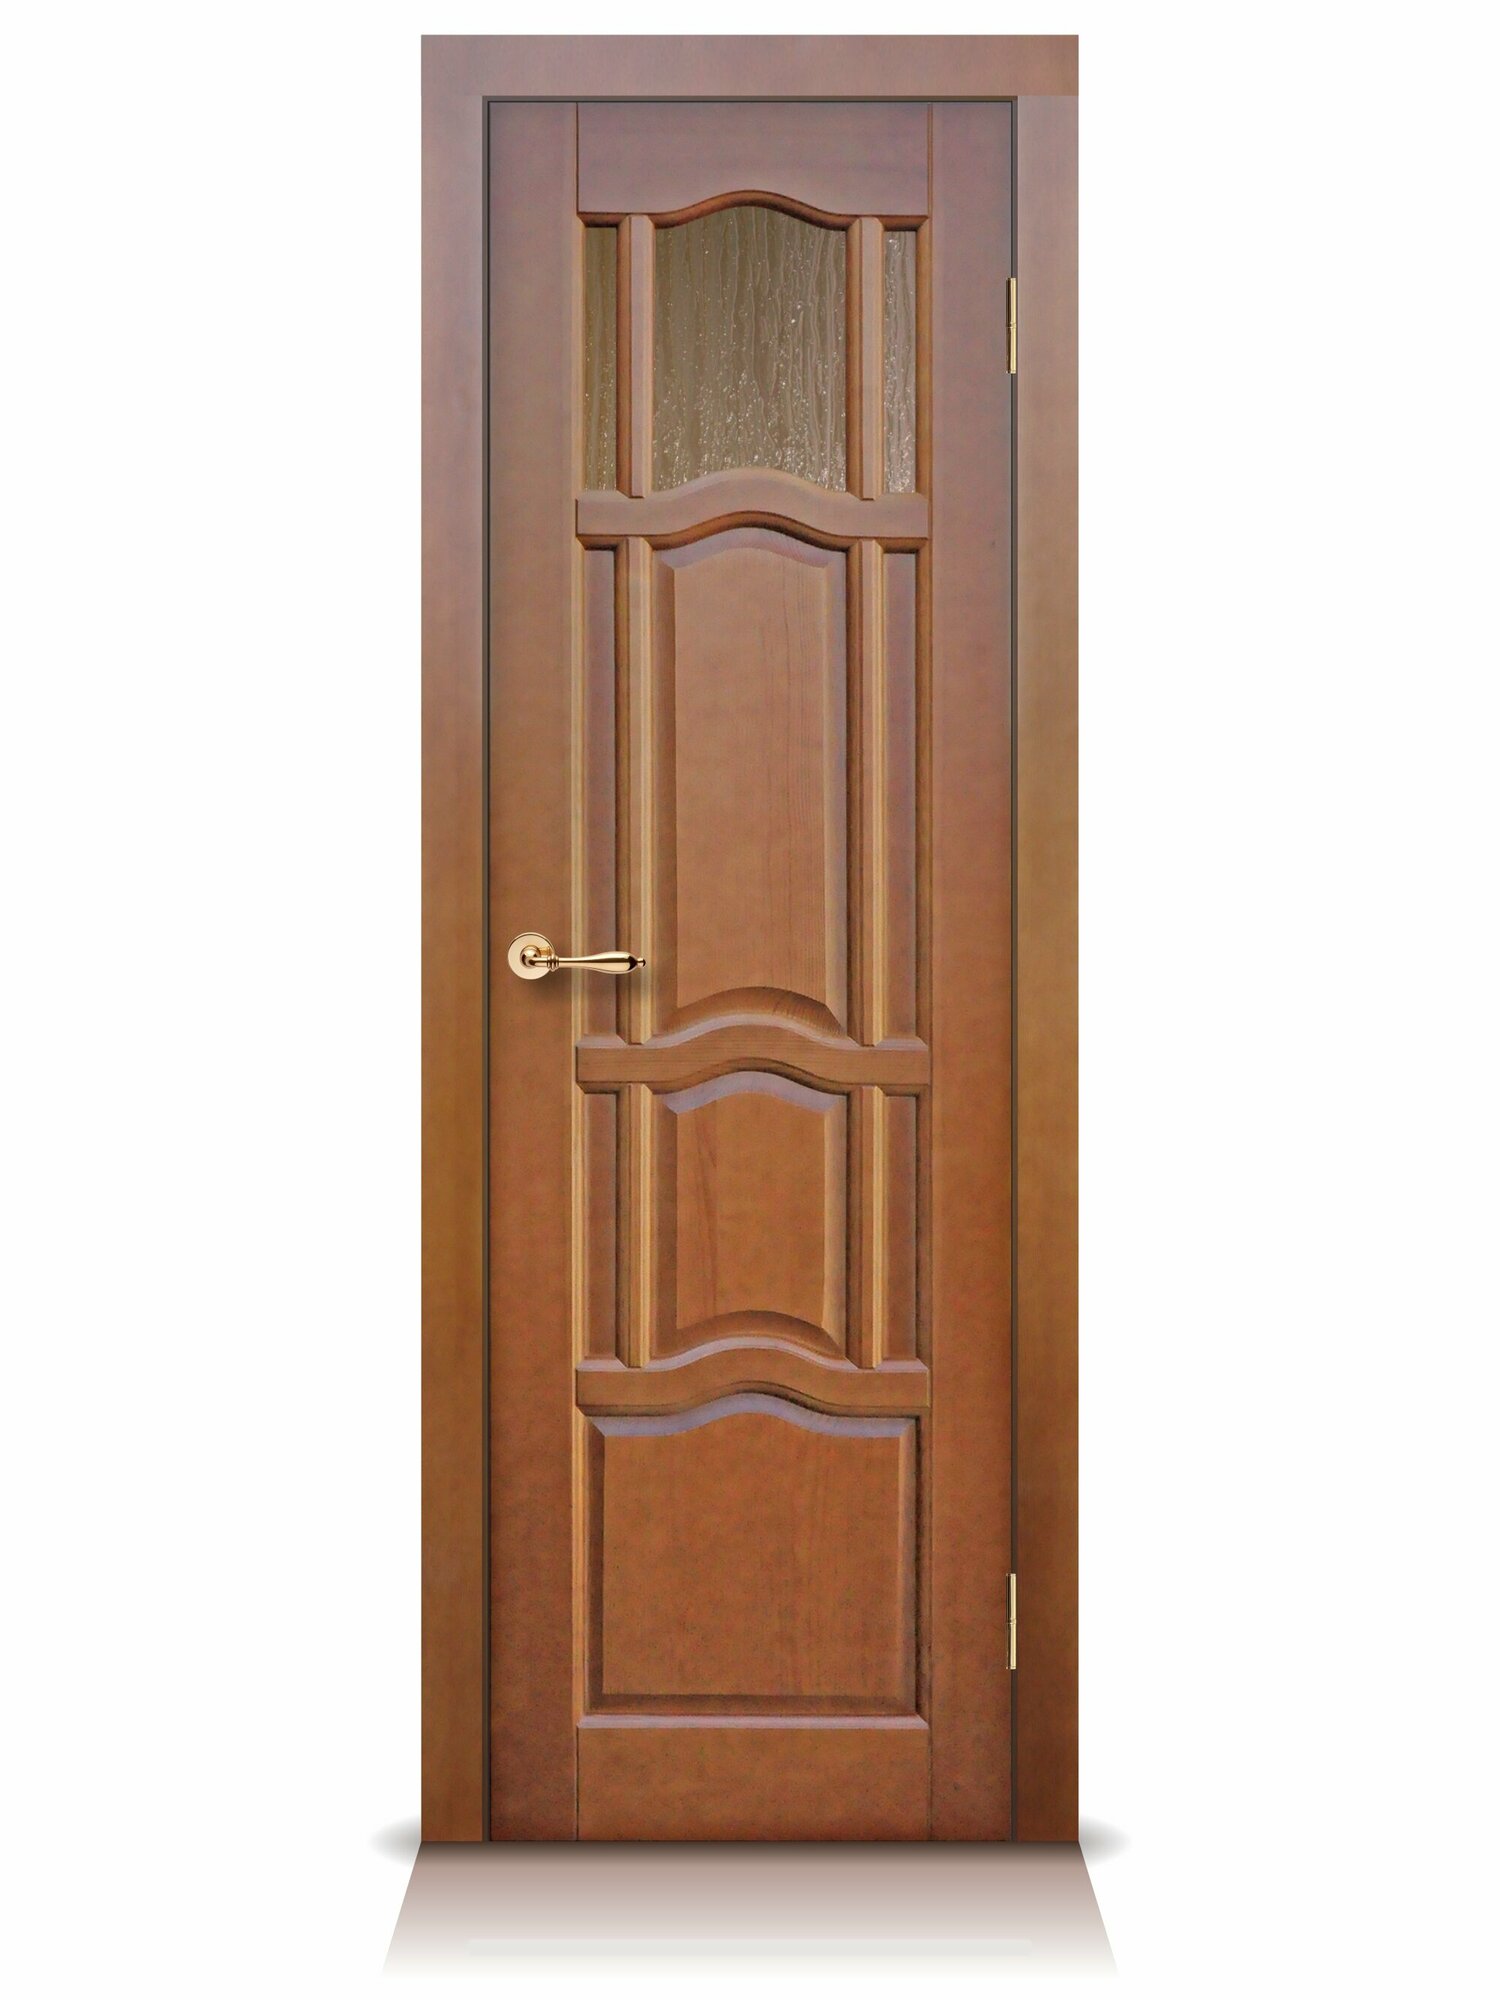 Ампир дгво 21-7 верхнее остекление. Дверное полотно филенчатое (2000x600), массив дерева с коробкой и наличником